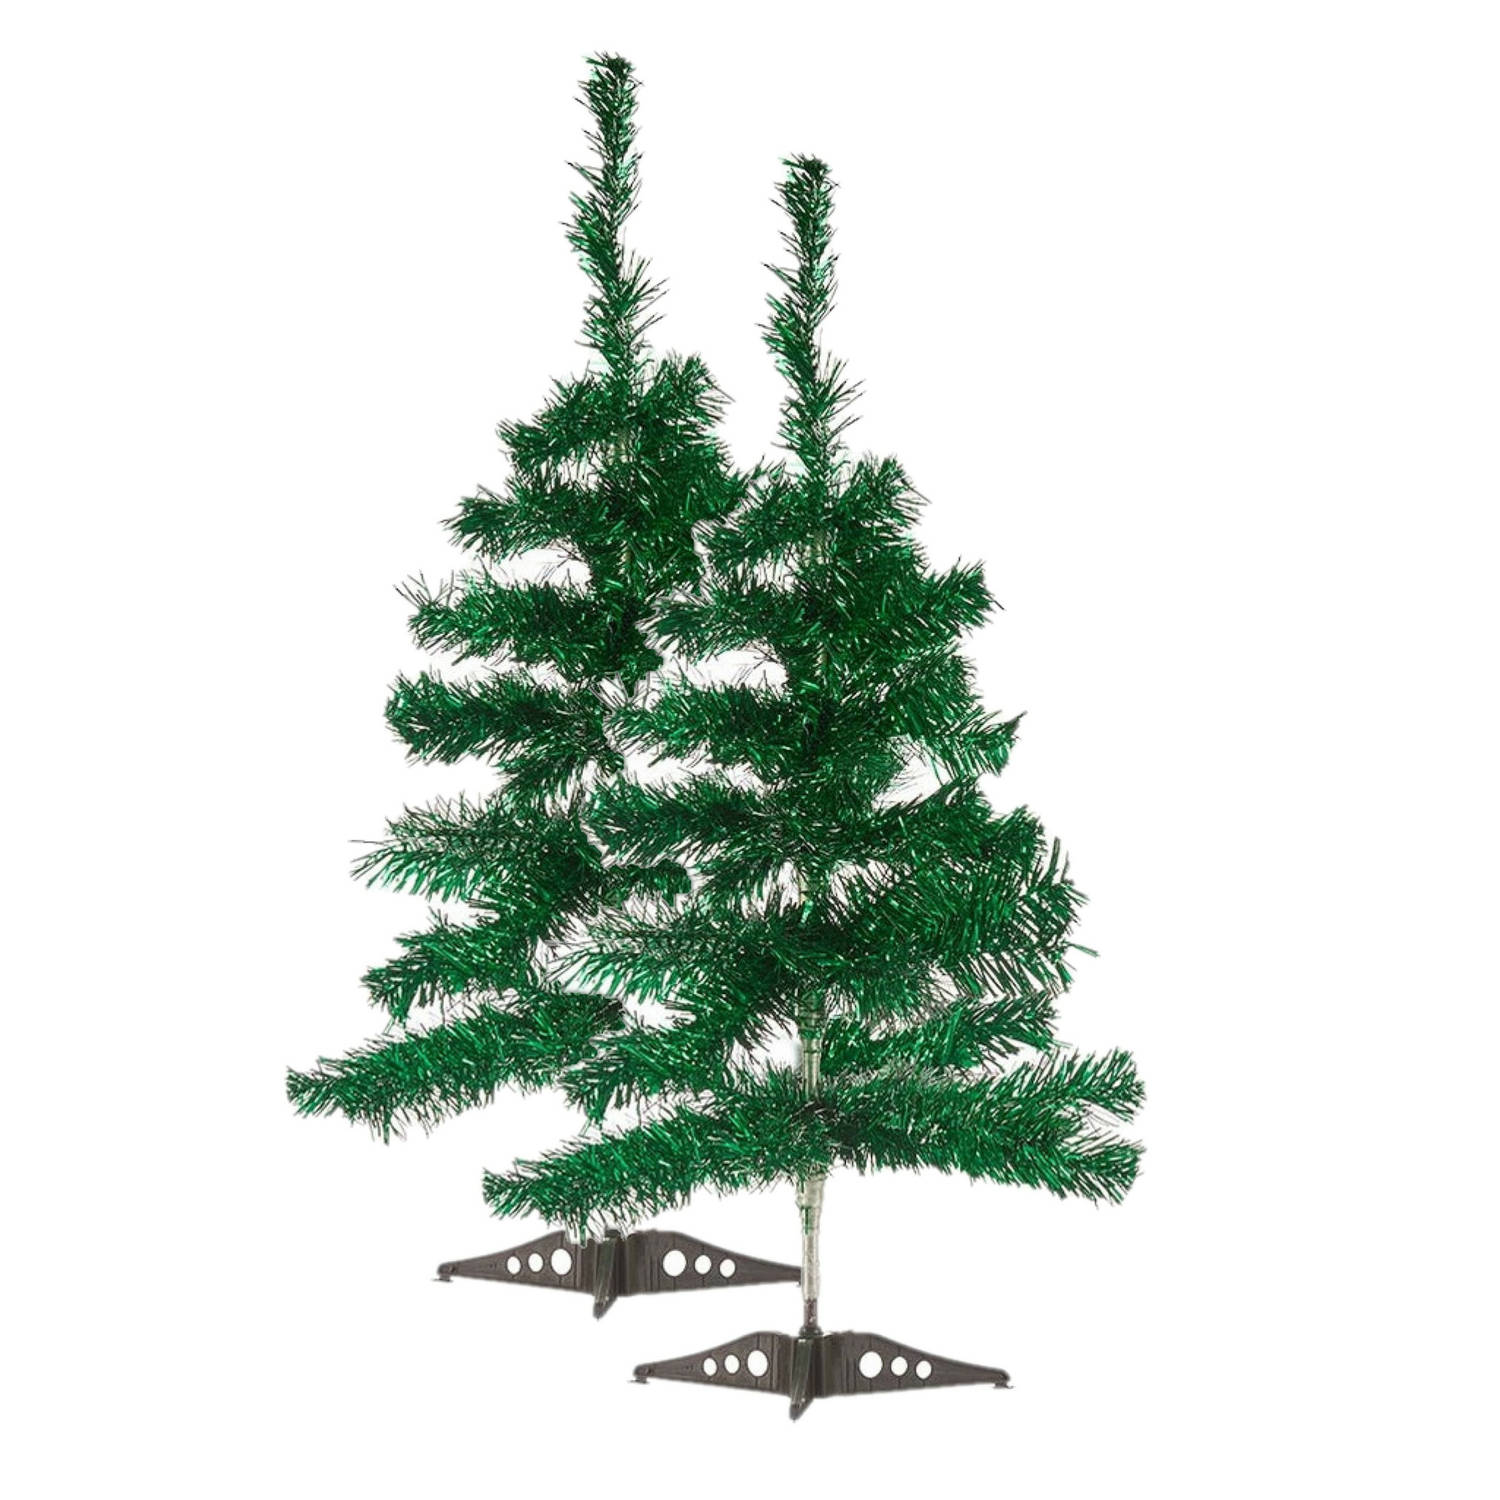 2x stuks kleine glitter groene kerstbomen van 60 cm - Kunstkerstboom